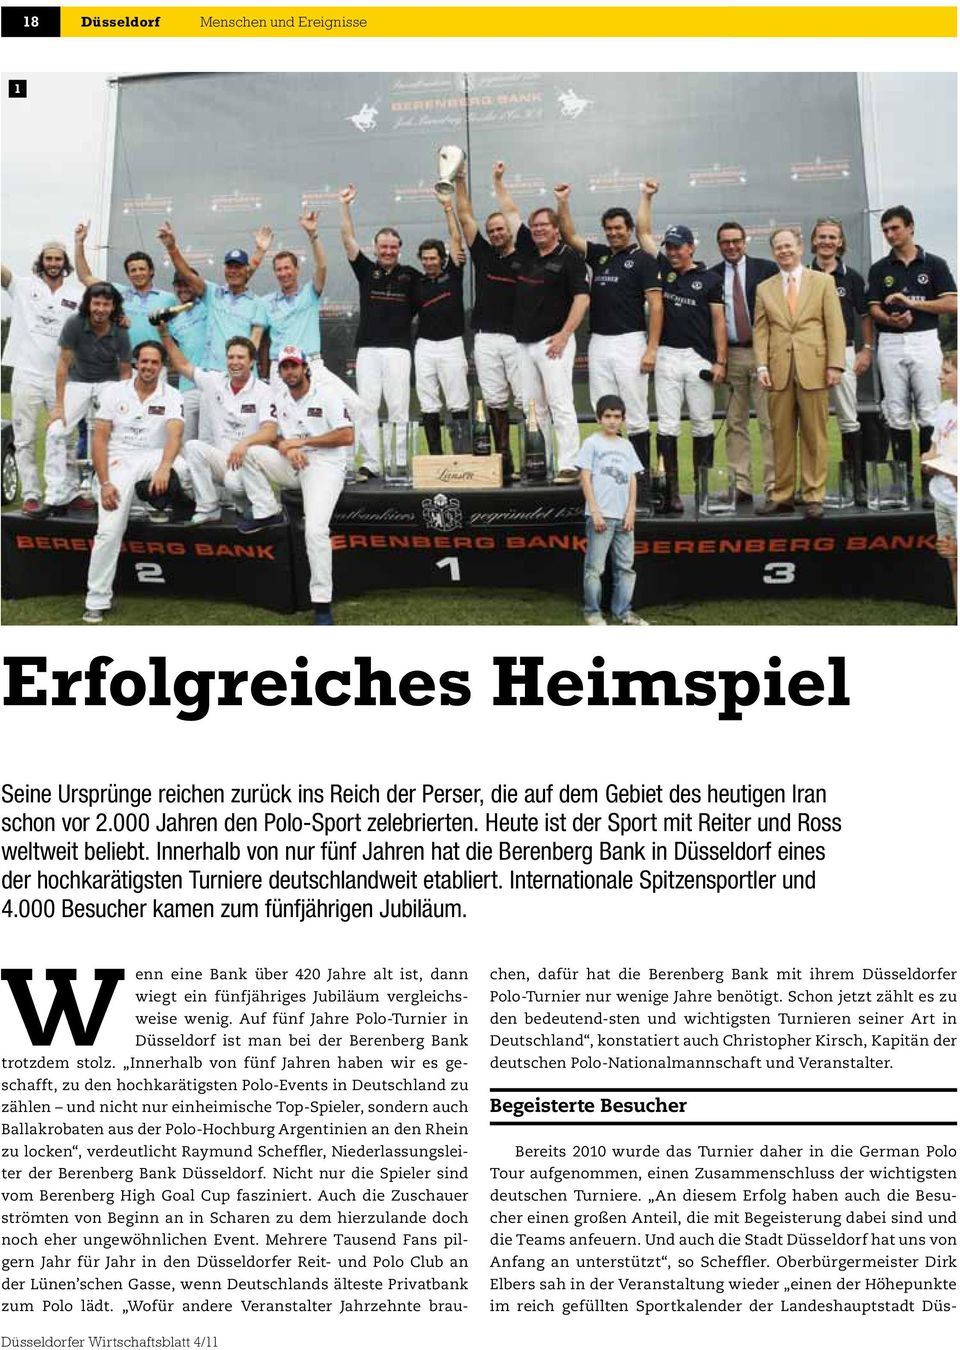 Innerhalb von nur fünf Jahren hat die Berenberg Bank in Düsseldorf eines der hochkarätigsten Turniere deutschlandweit etabliert. Internationale Spitzensportler und 4.